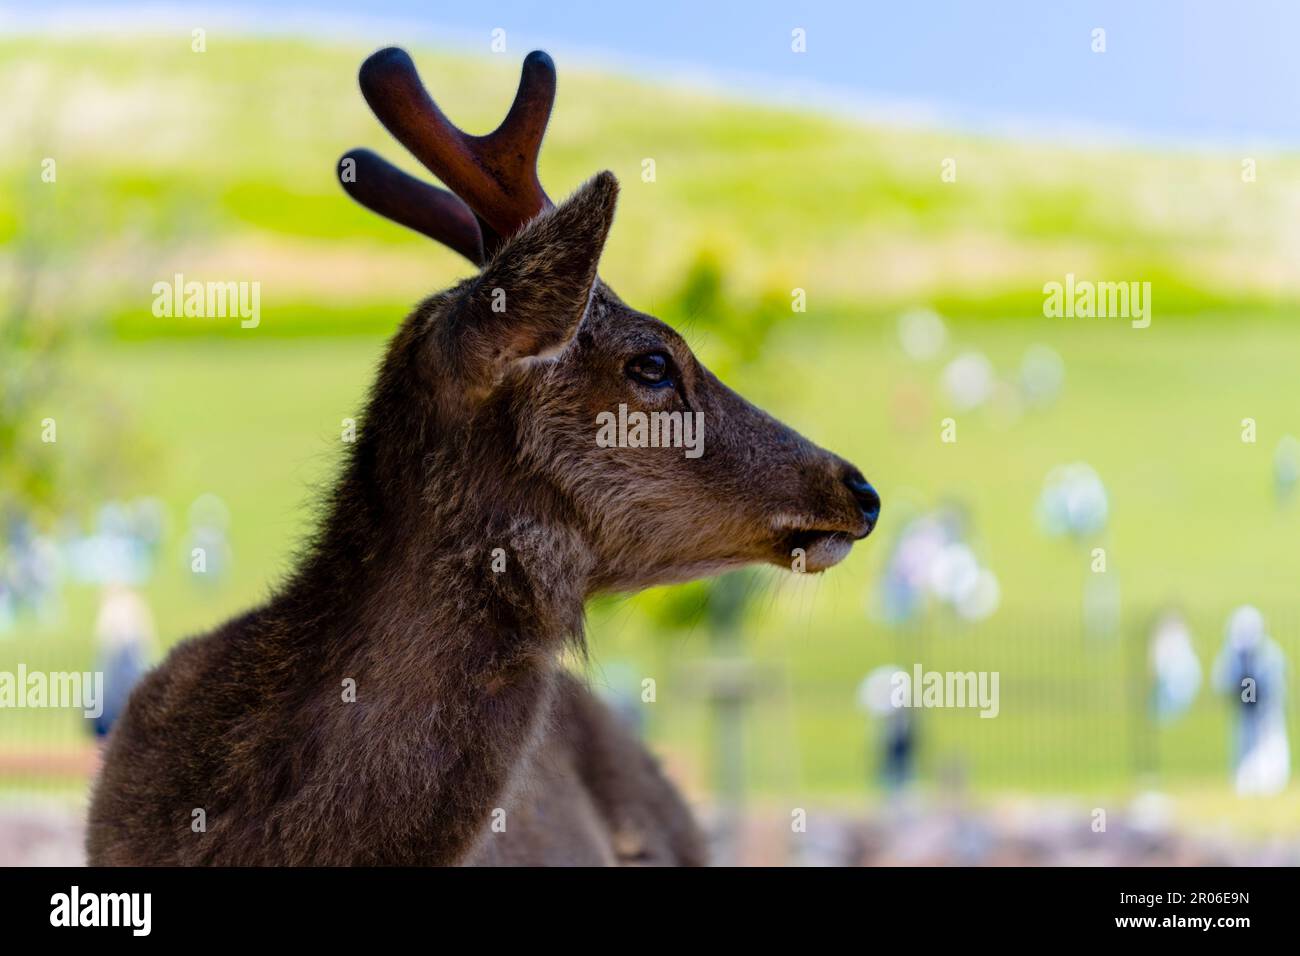 Tame deer in Nara/Japan Stock Photo